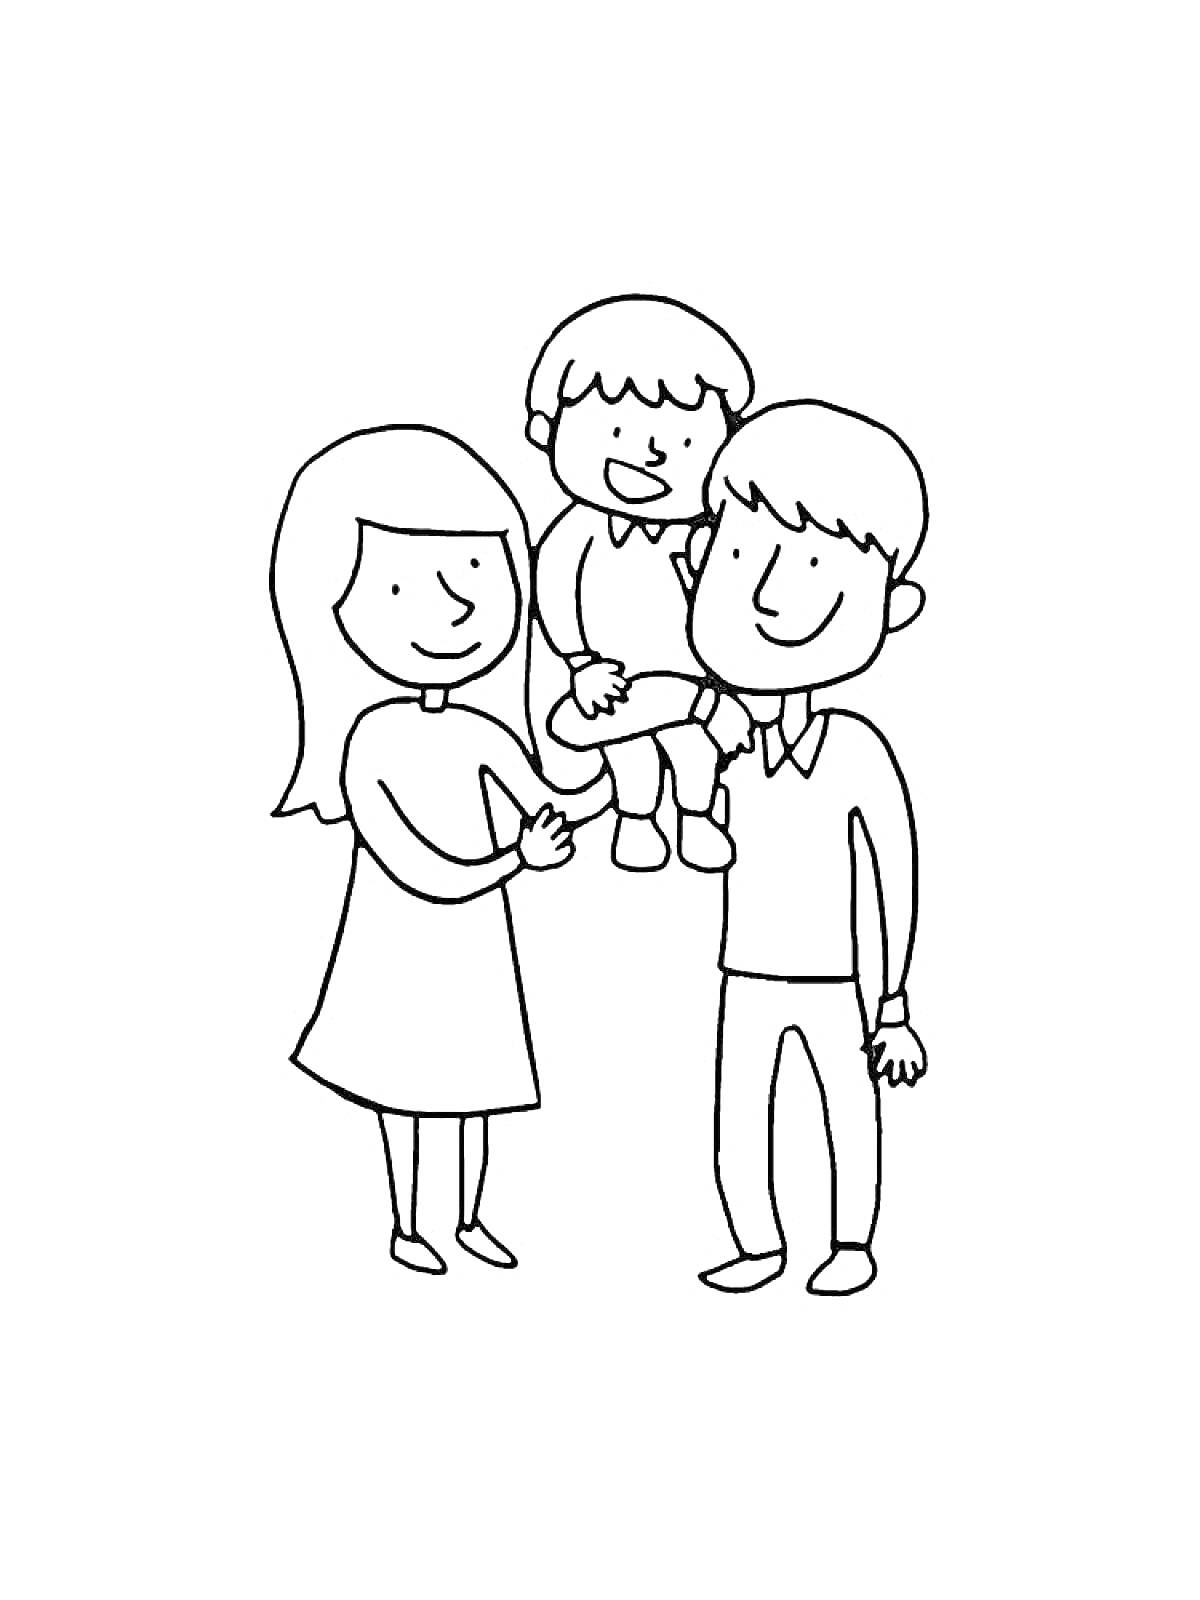 Раскраска Семья с ребенком на руках у отца